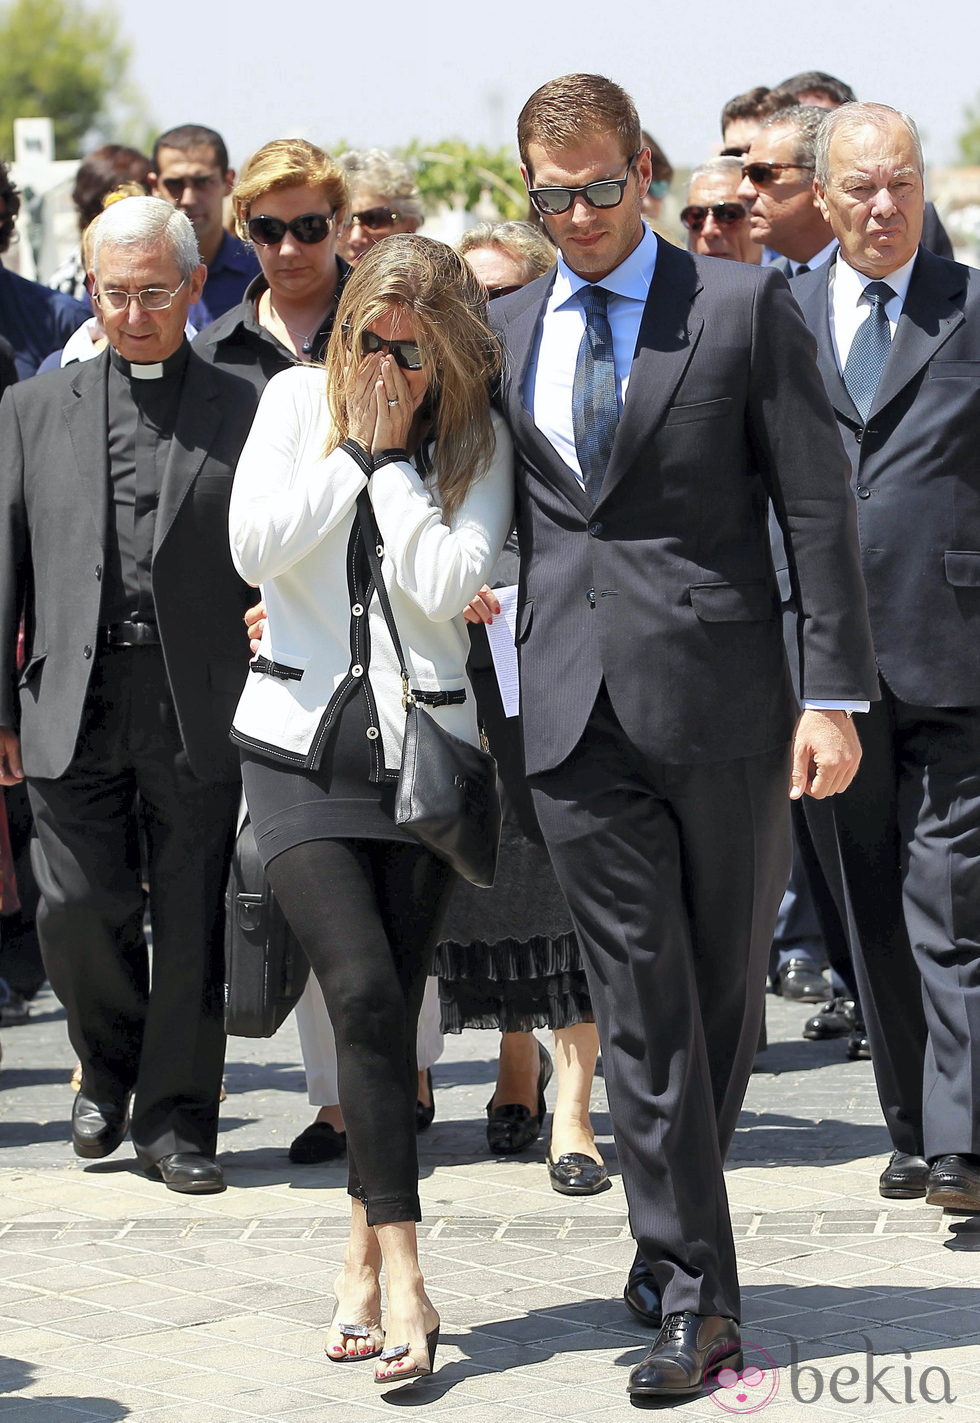 Susana Uribarri, desolada en el funeral de su padre José Luis Uribarri junto a Darek